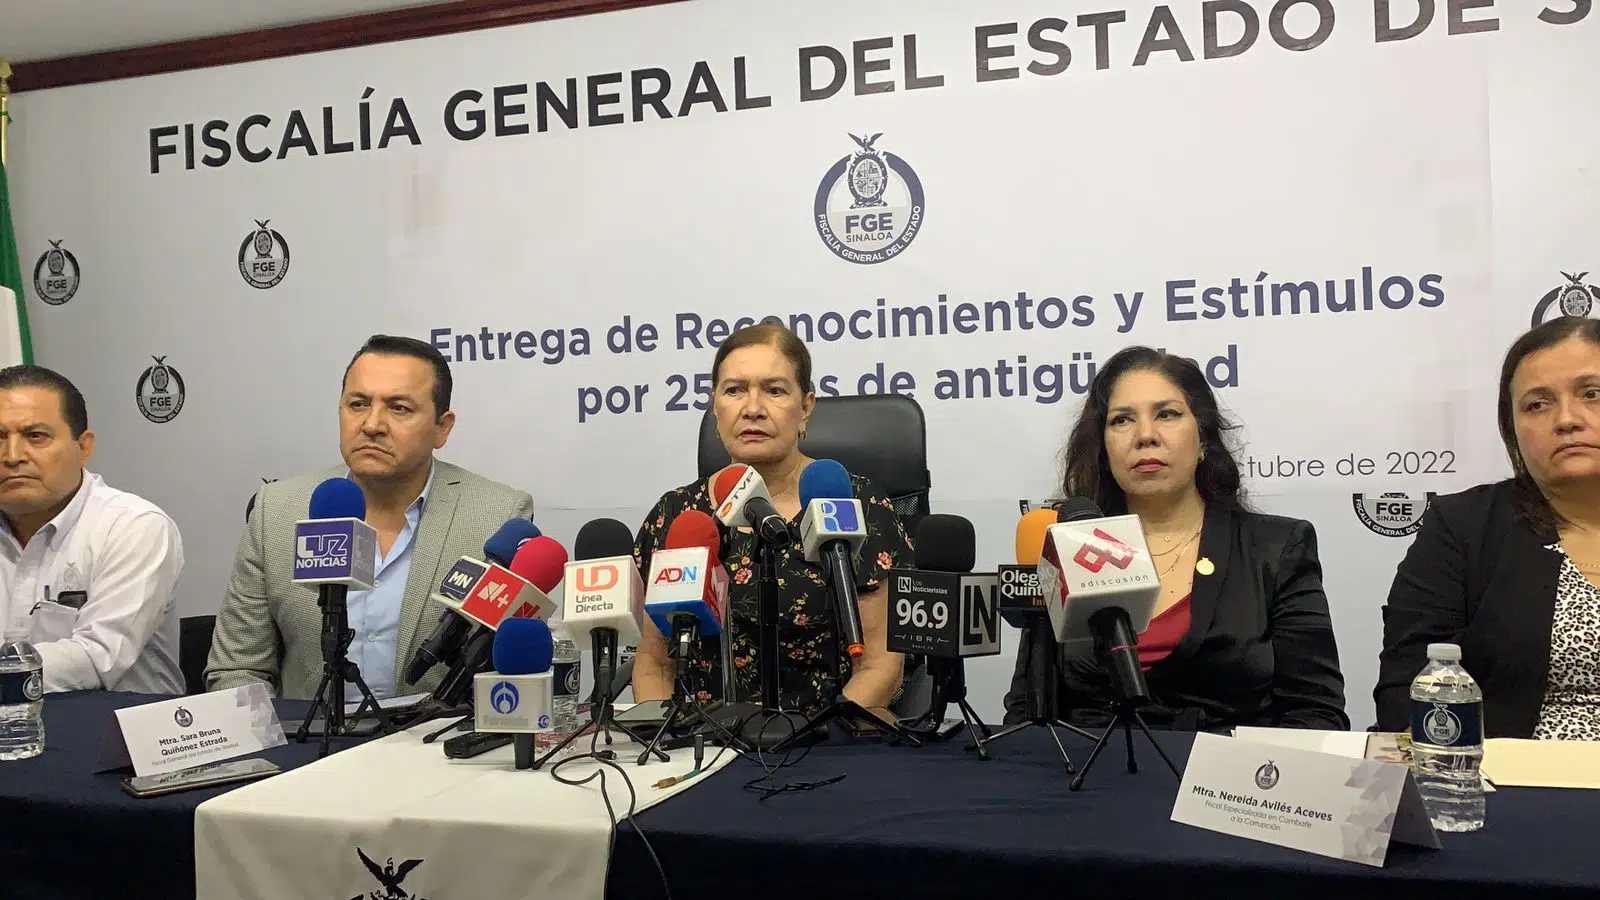 Renuncia de “El Químico” no interfiere en investigación de la Fiscalía en su contra: Sara Bruna